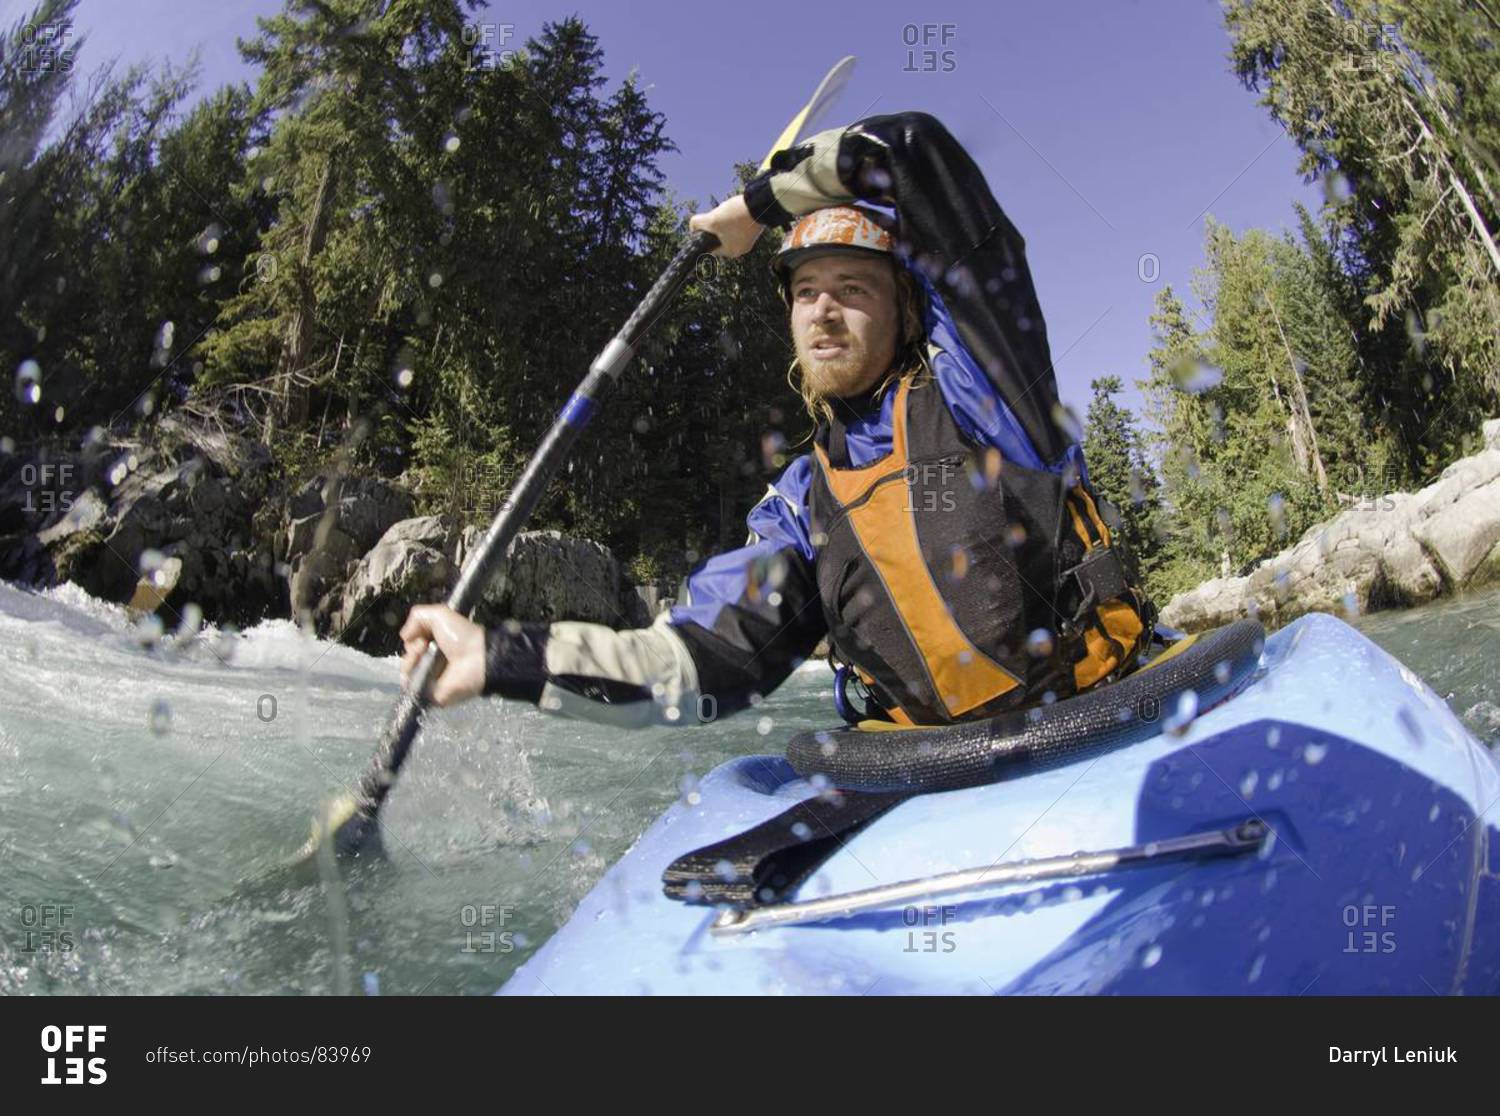 Man kayaking rough waters